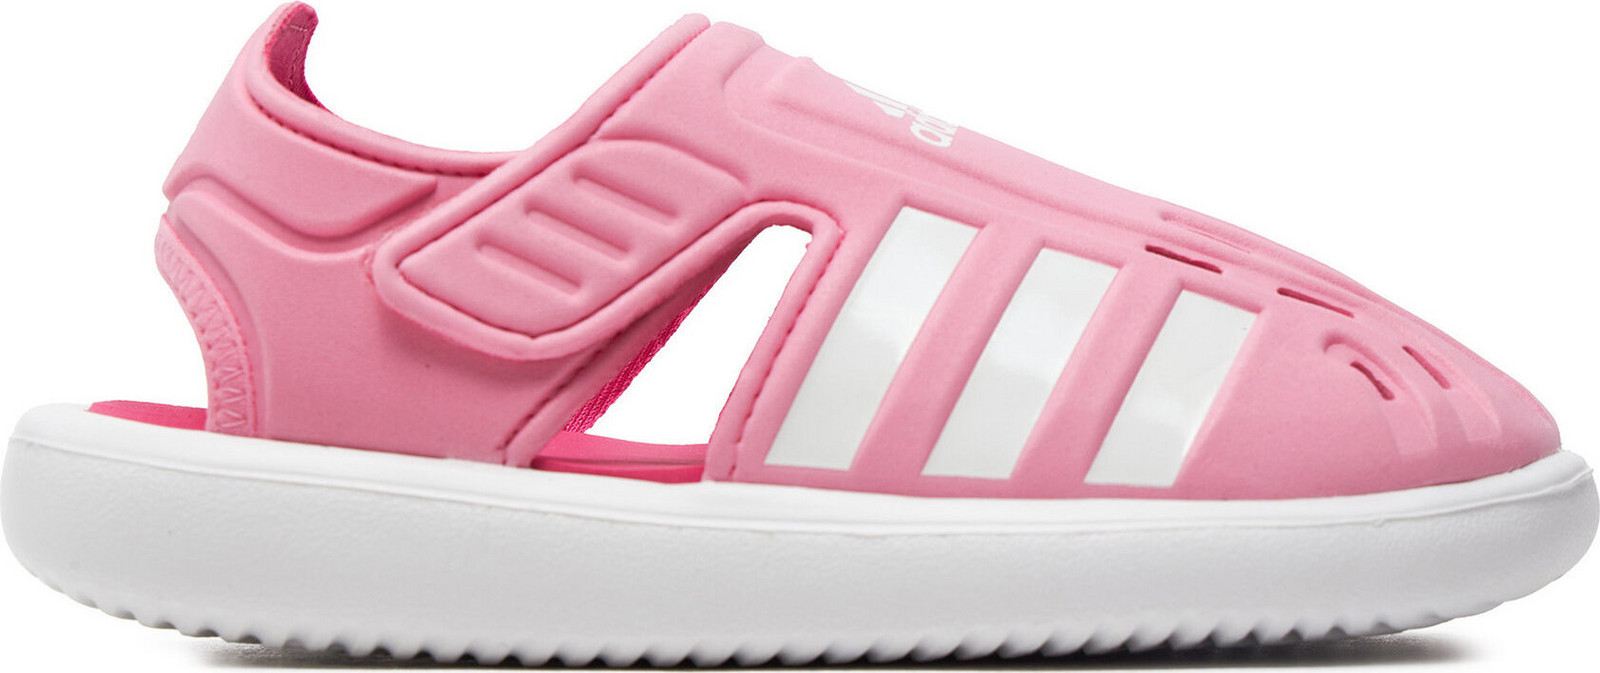 Sandály adidas Summer Closed Toe Water Sandals IE0165 Růžová